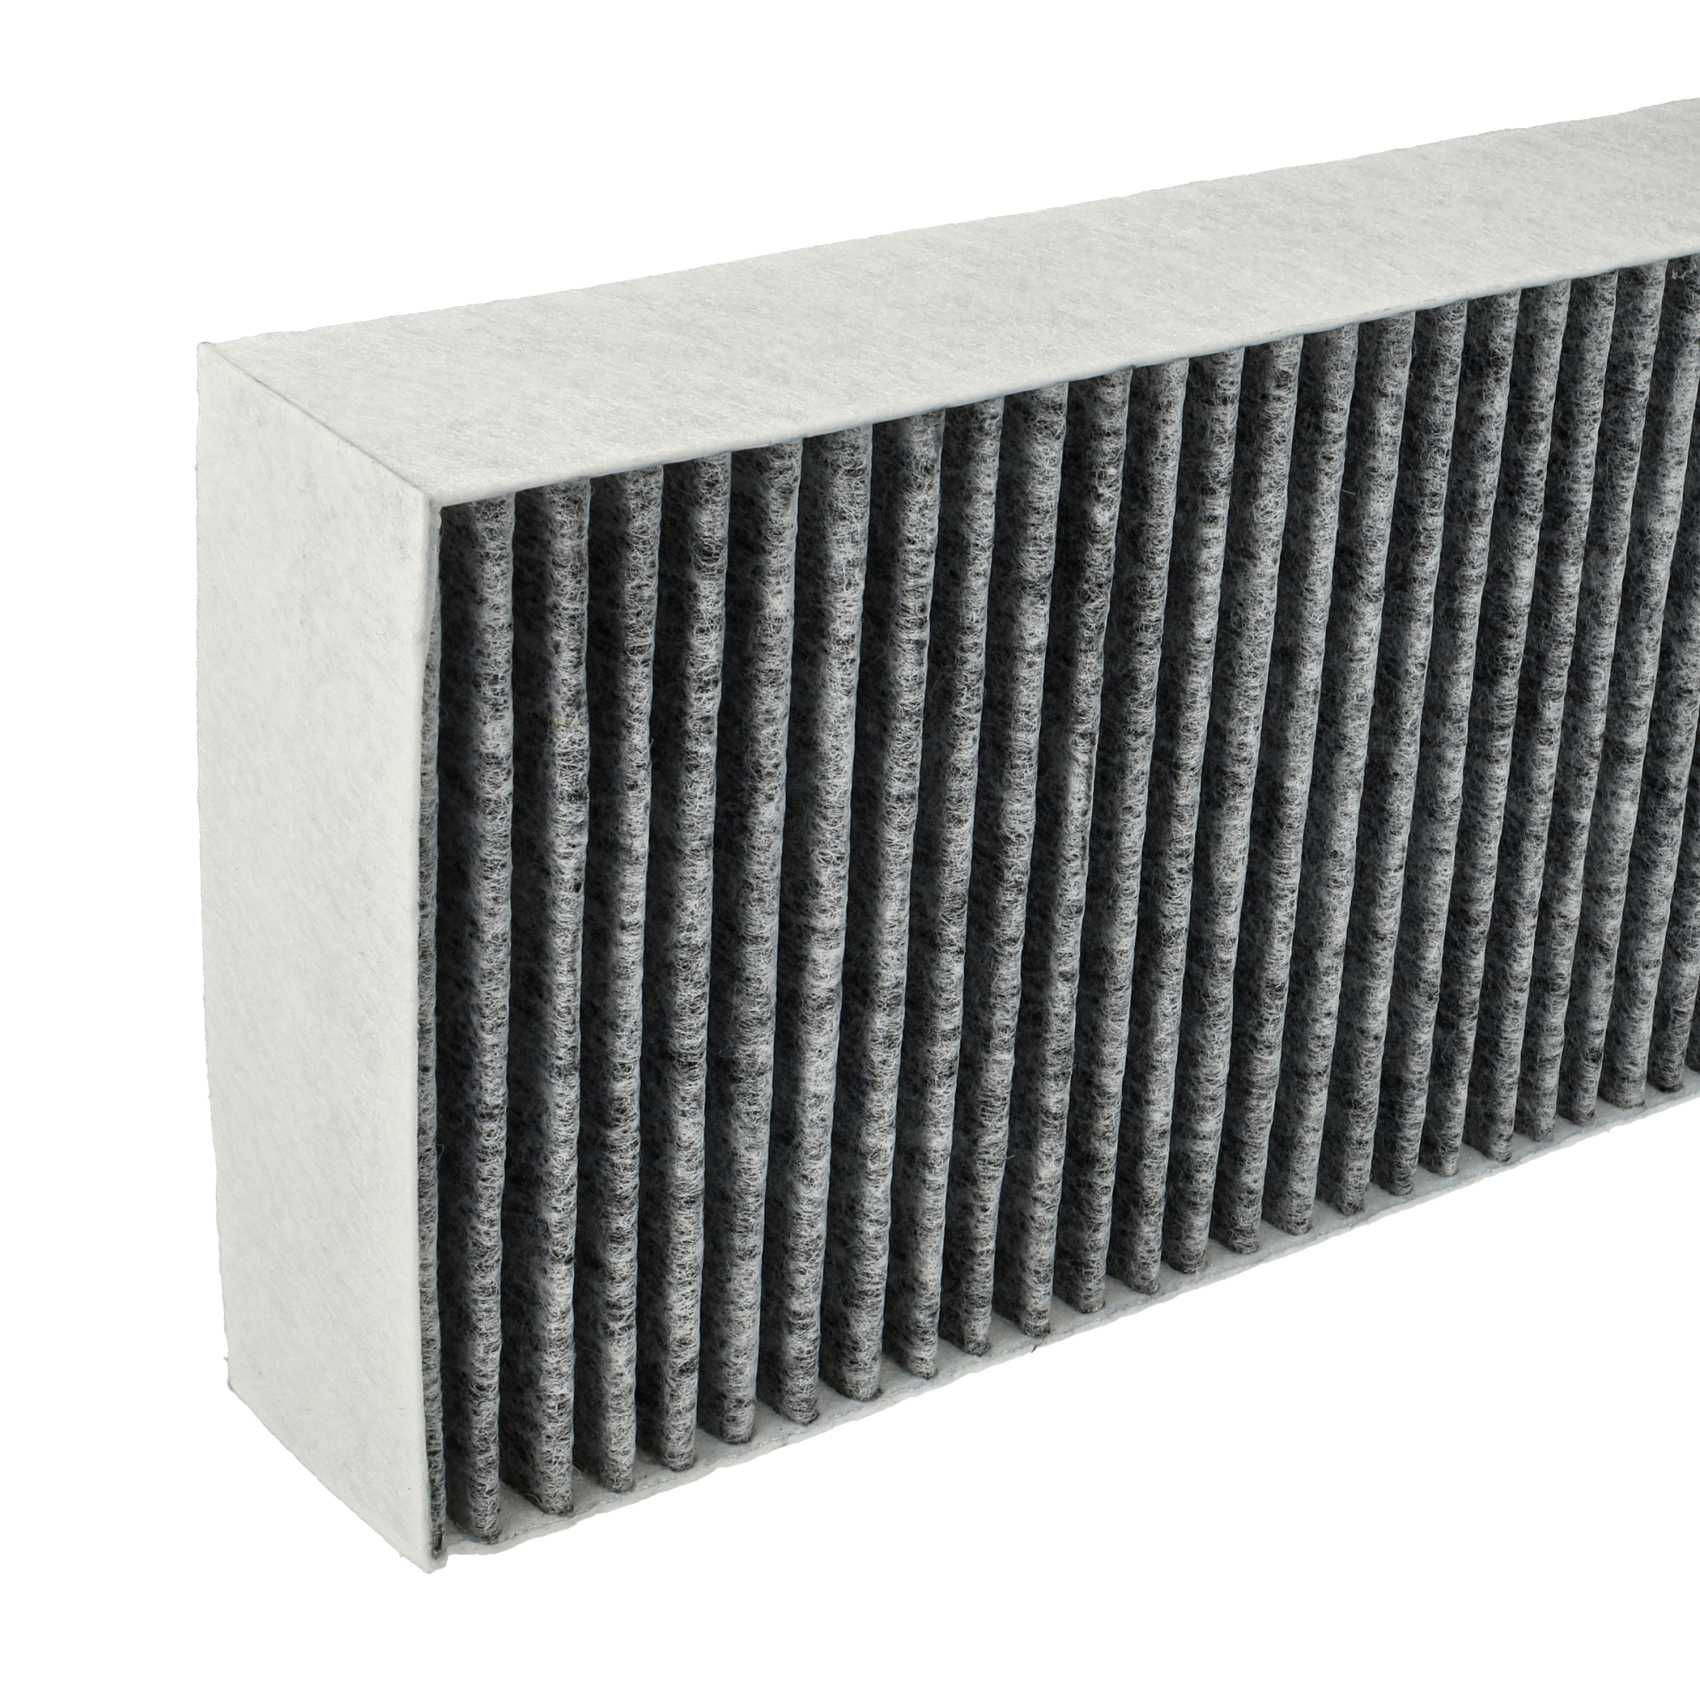 2x Filtres à charbon actif remplace Bora BAKFS, BAKFS-002 pour hotte Bora - 34 x 12,2 x 4,25 cm